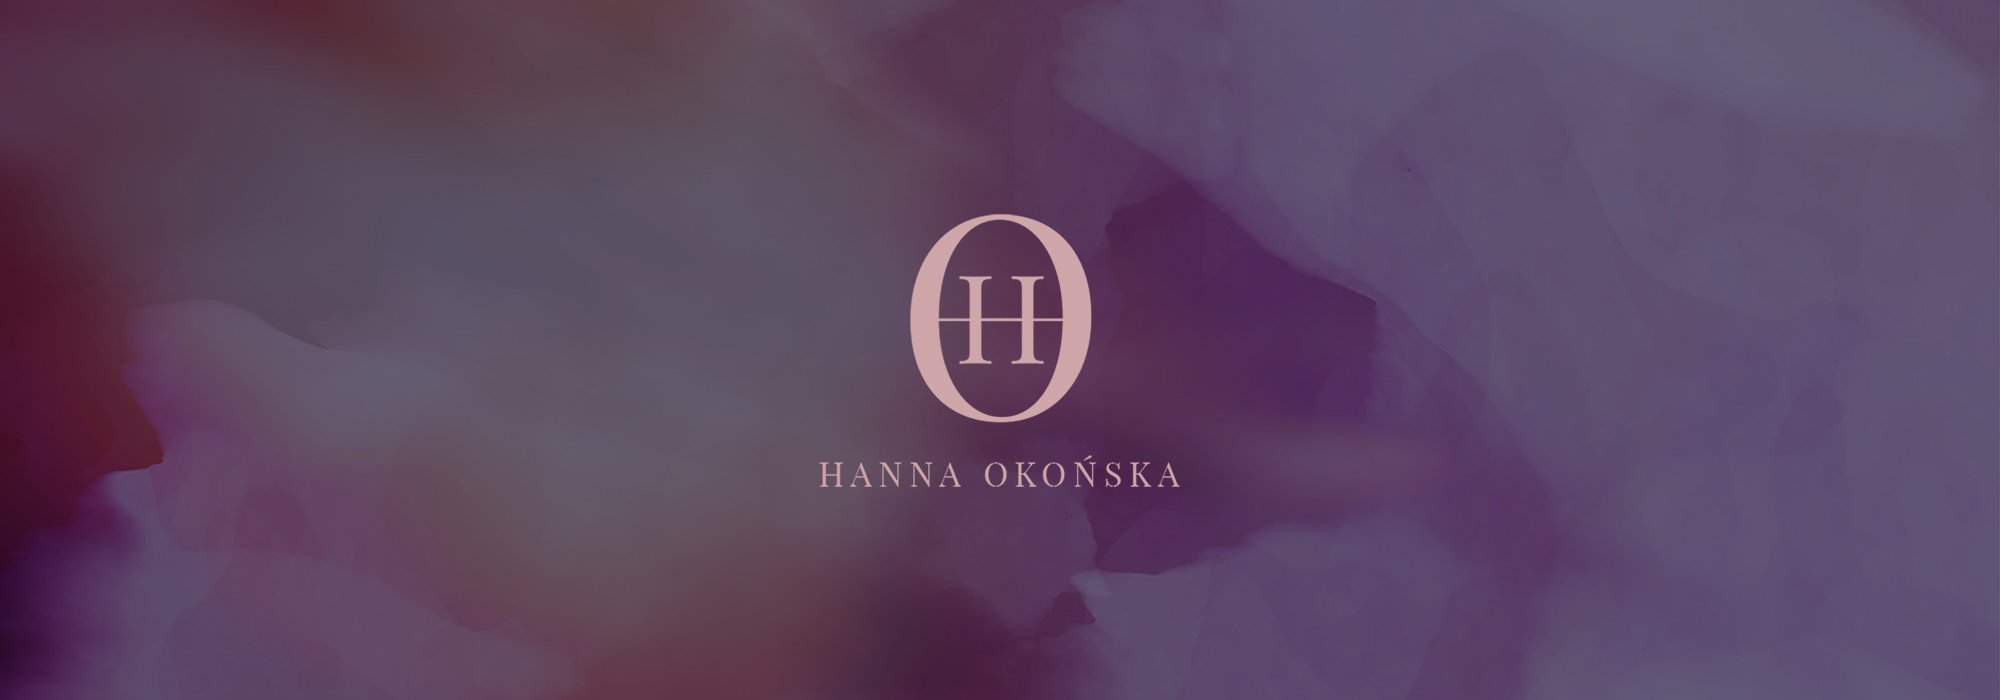 Hanna Okońska